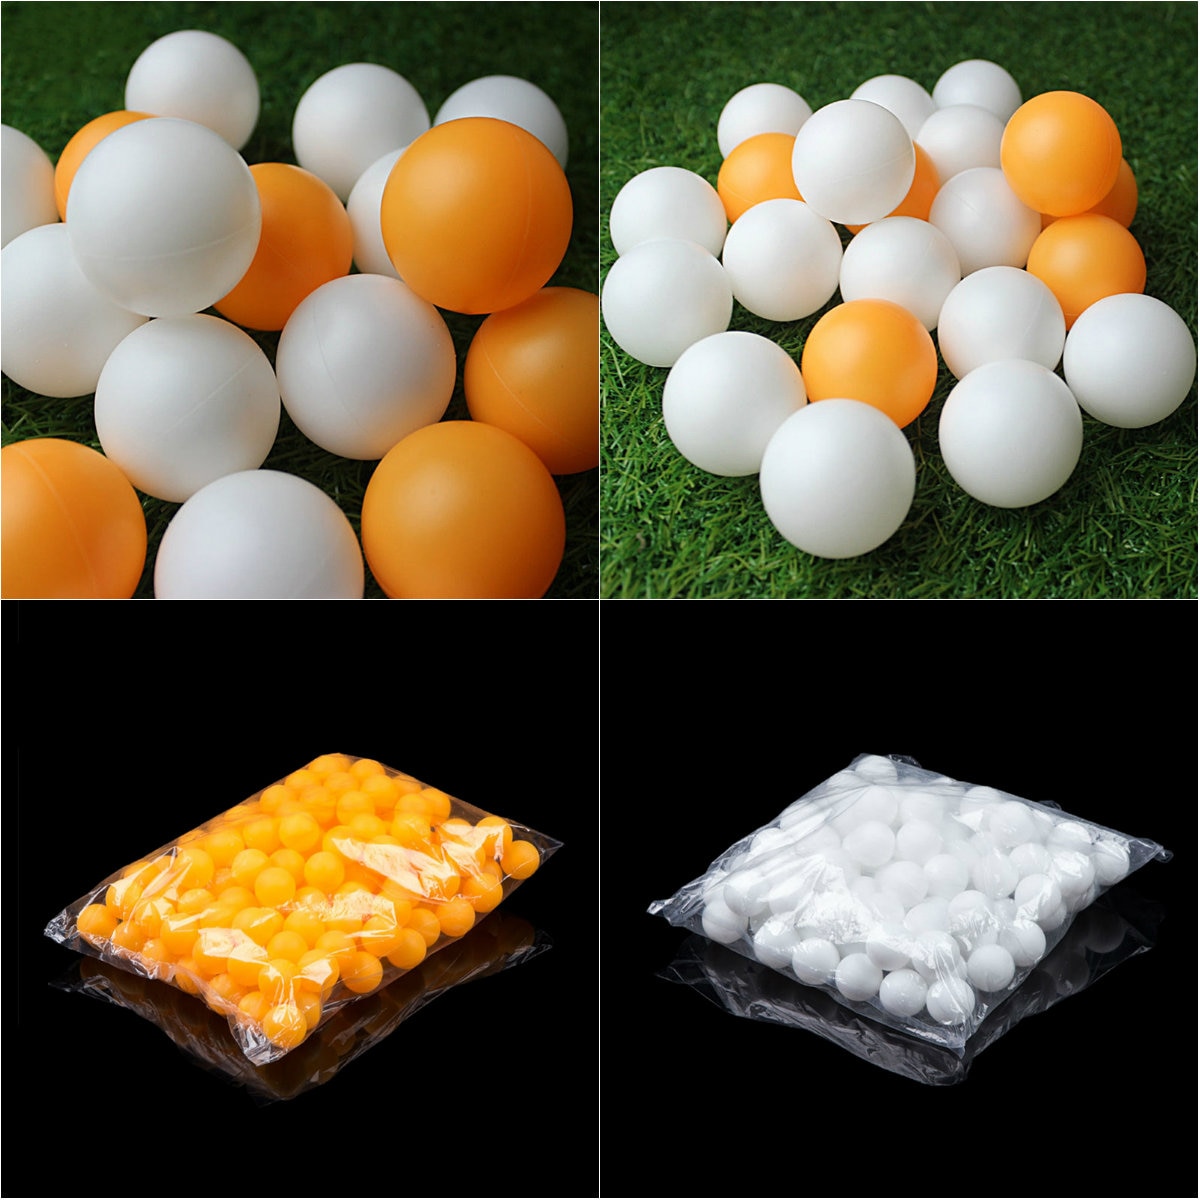 100 stk / taske bordtennis bal ping pong bolde sal 40mm diametere til konkurrence træning lav pirce